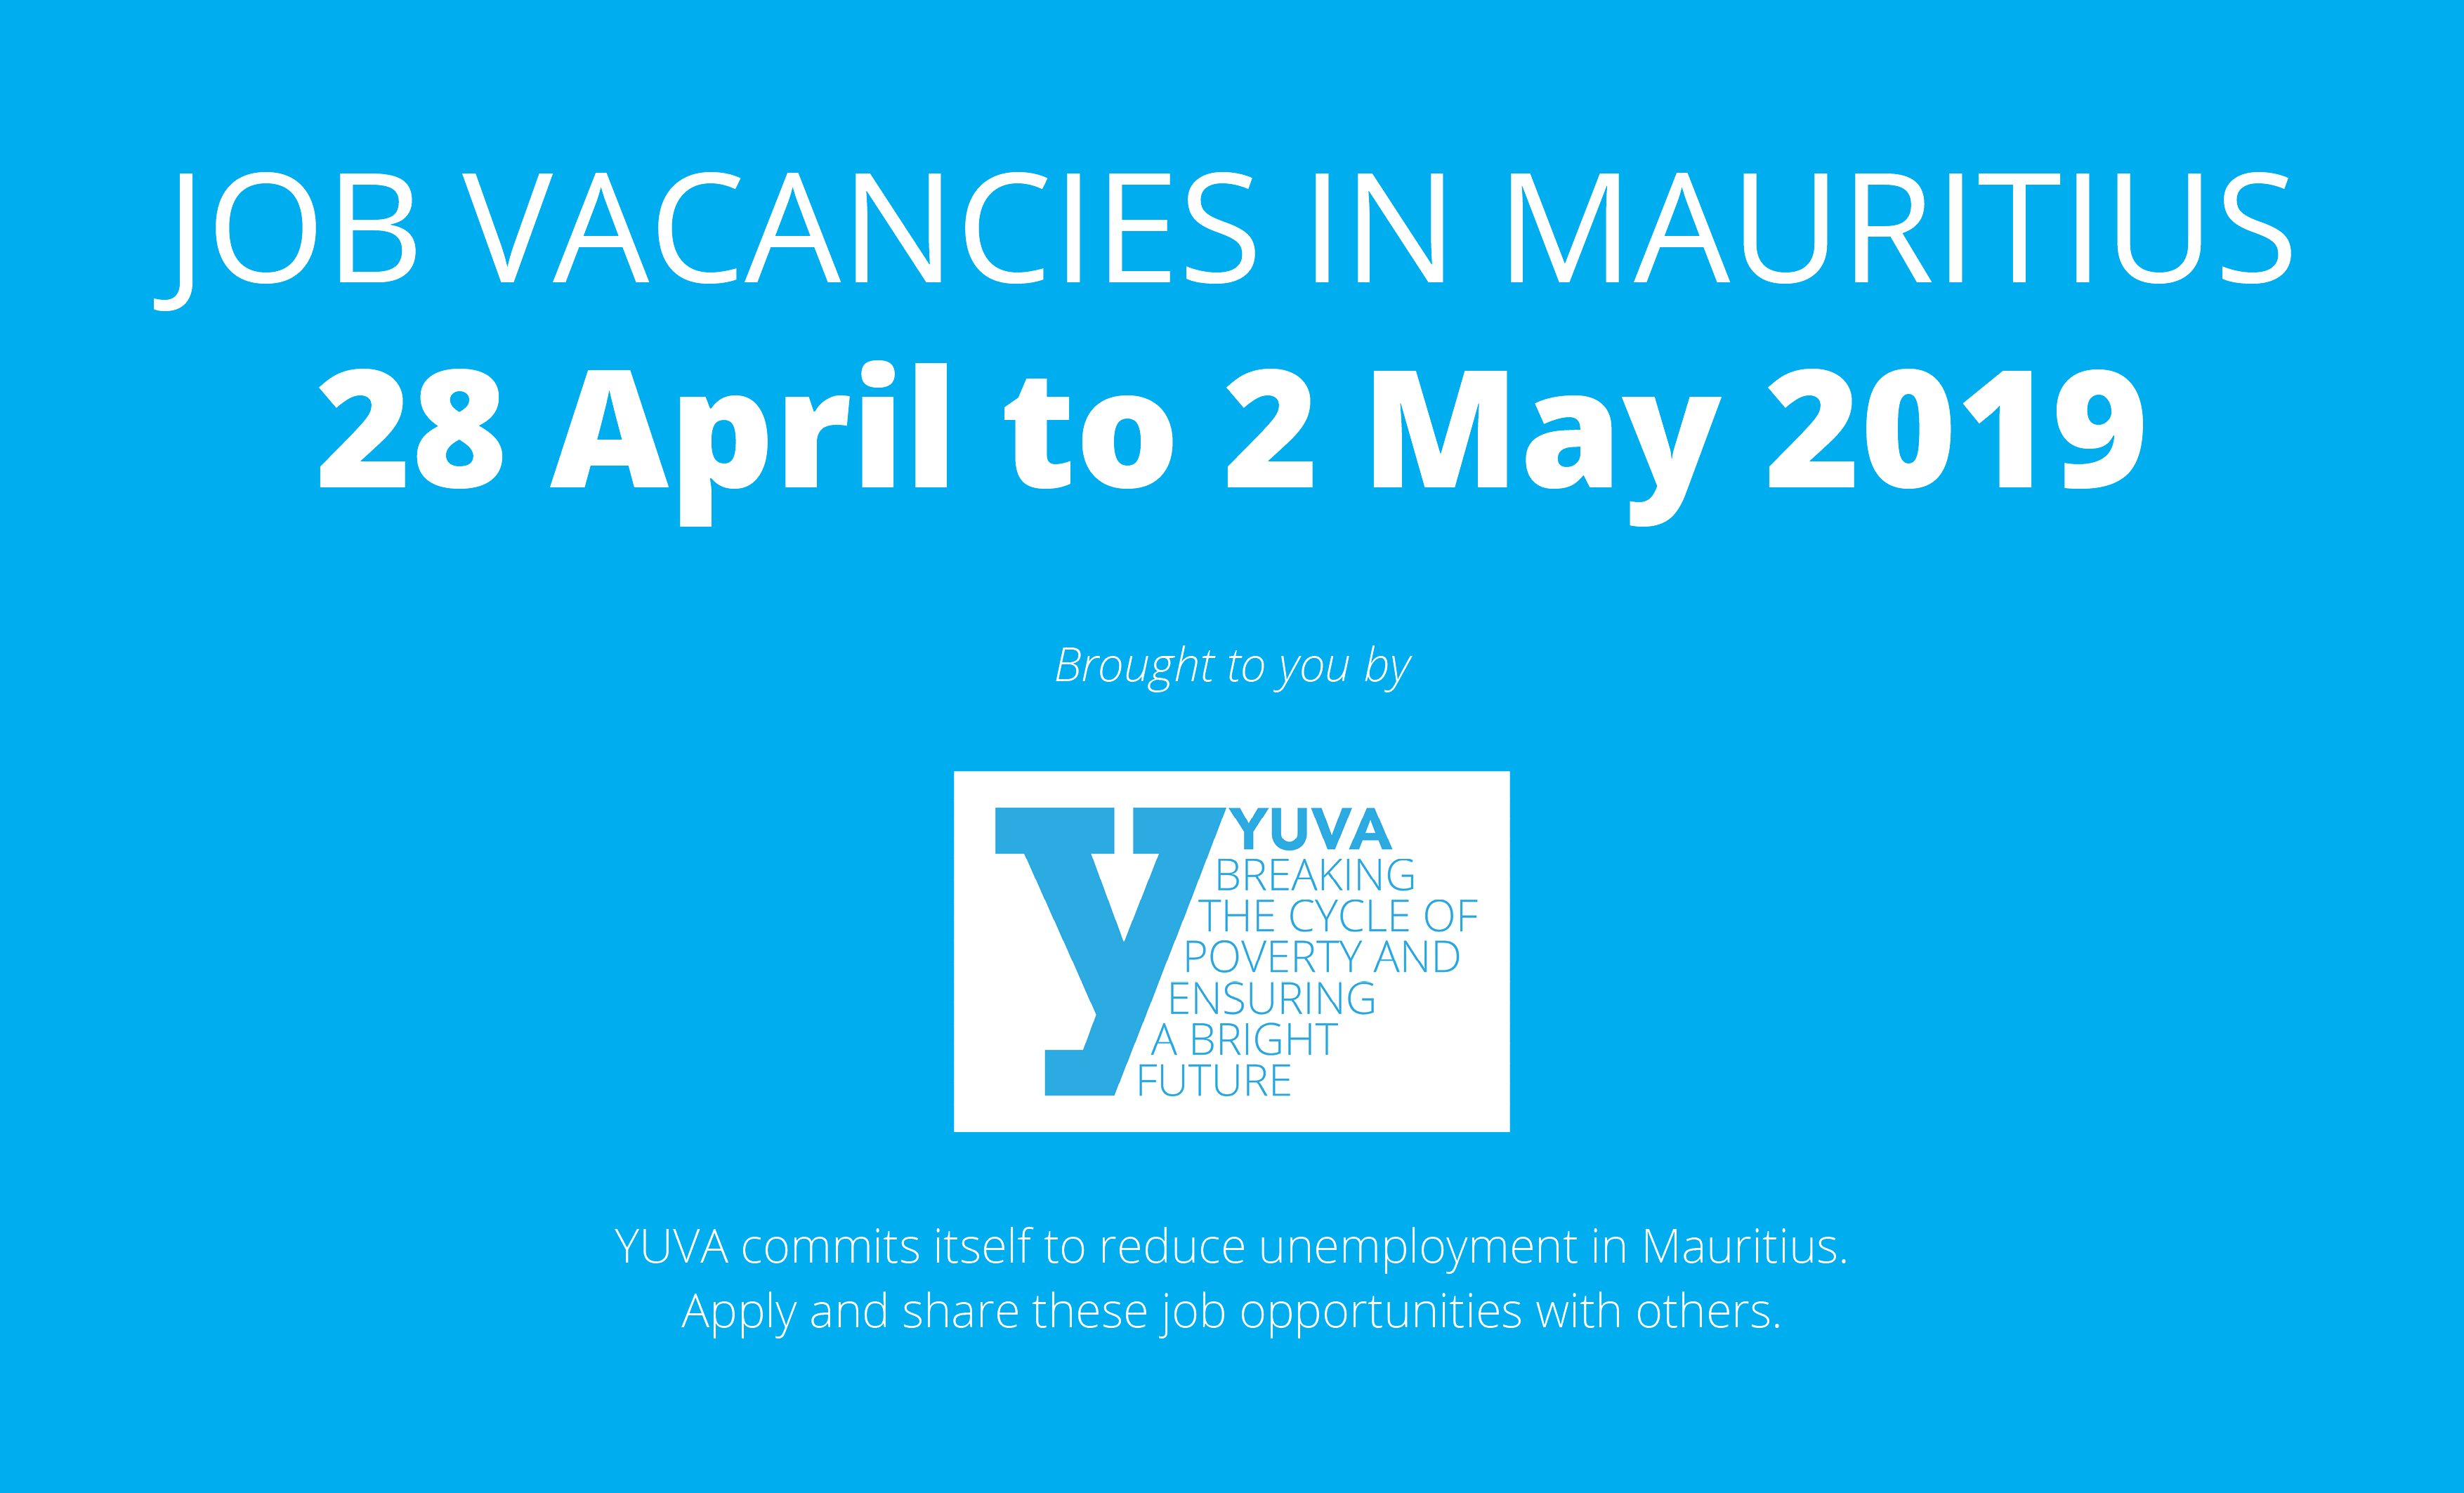 Job vacancies in Mauritius